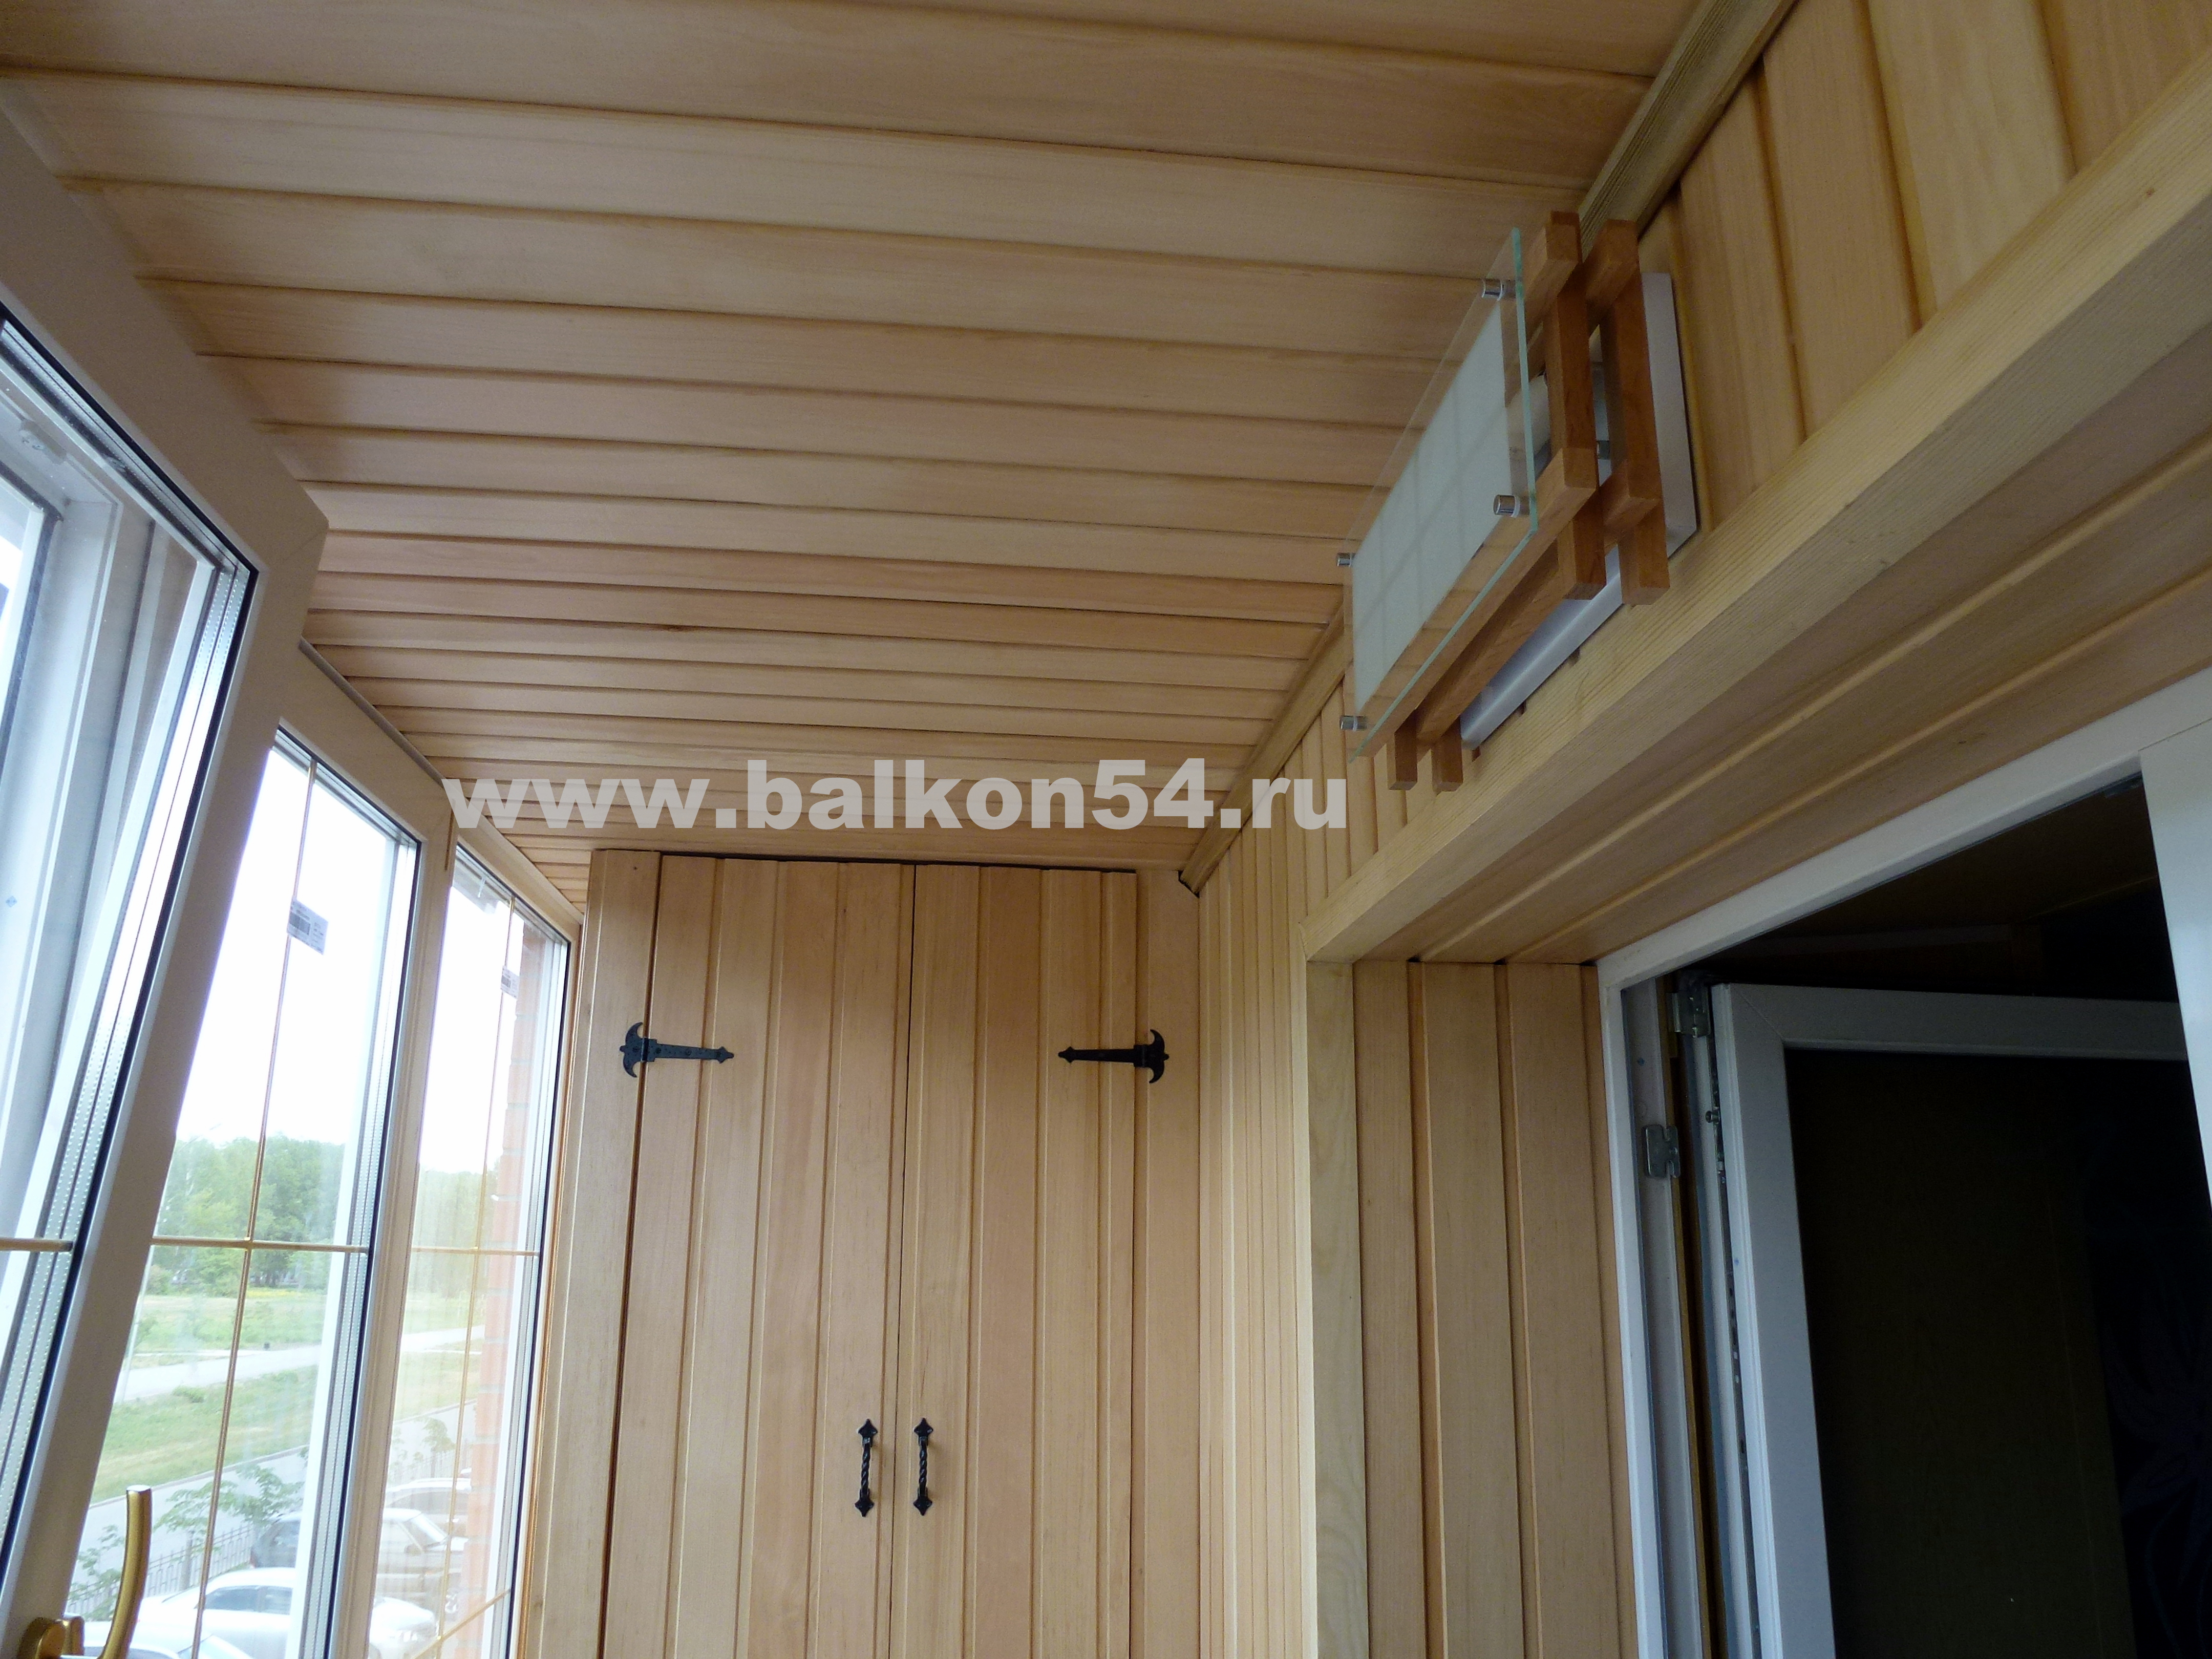 Фотографии обшивки балконов и лоджий евровагонкой, пластиковыми панелями, блок-хаусом отделка балконов фото.